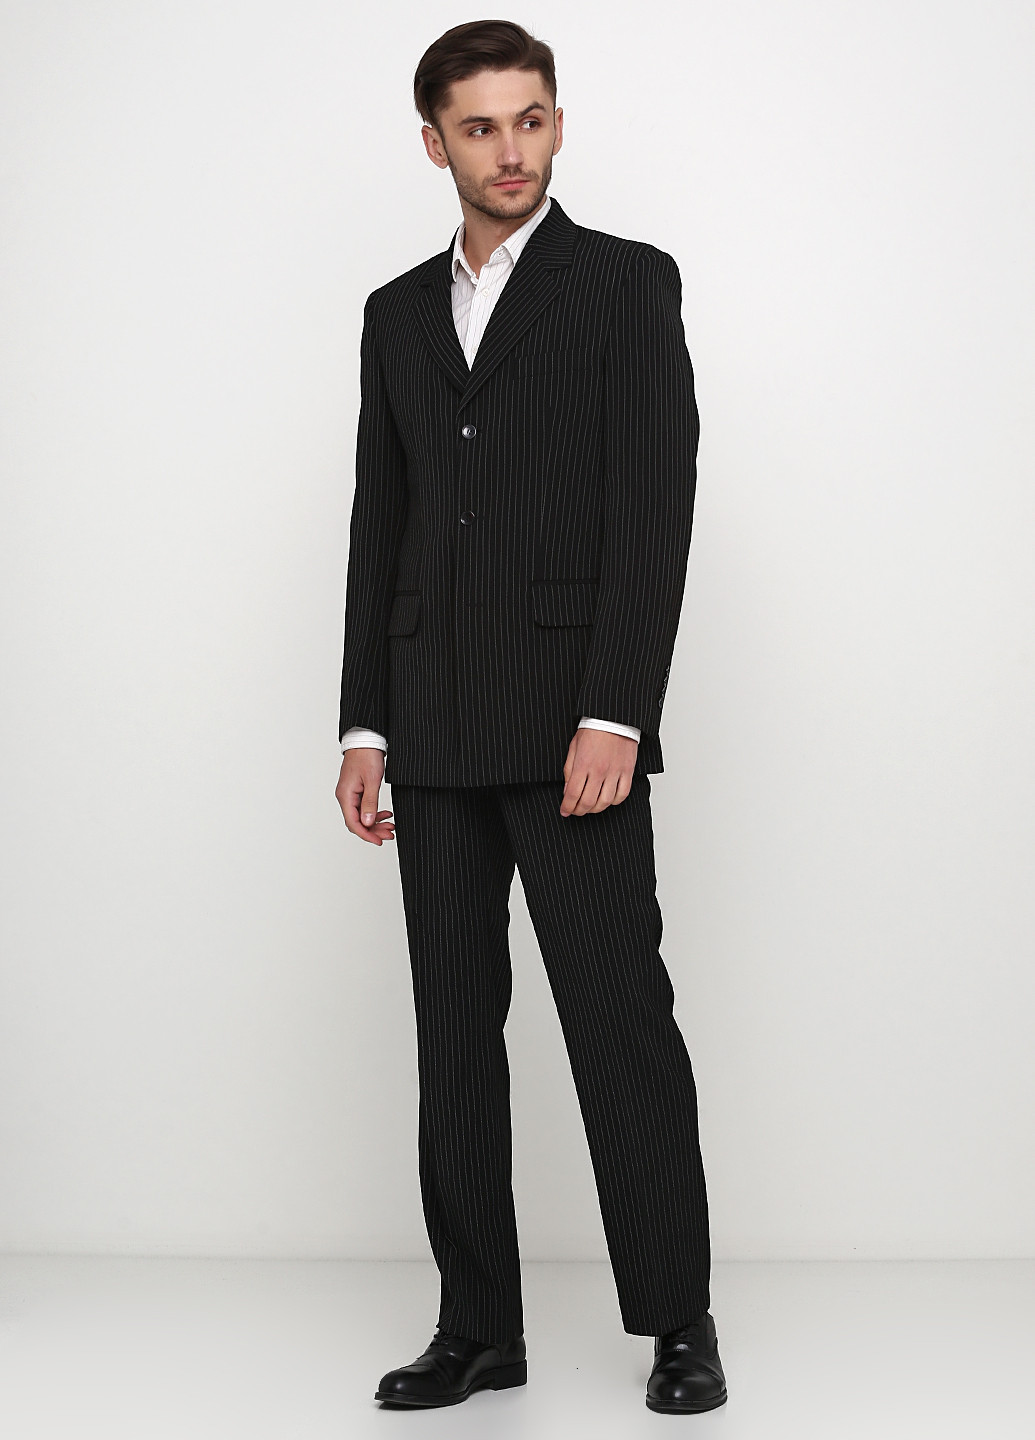 Черный демисезонный костюм (пиджак, брюки) брючный, с длинным рукавом Galant